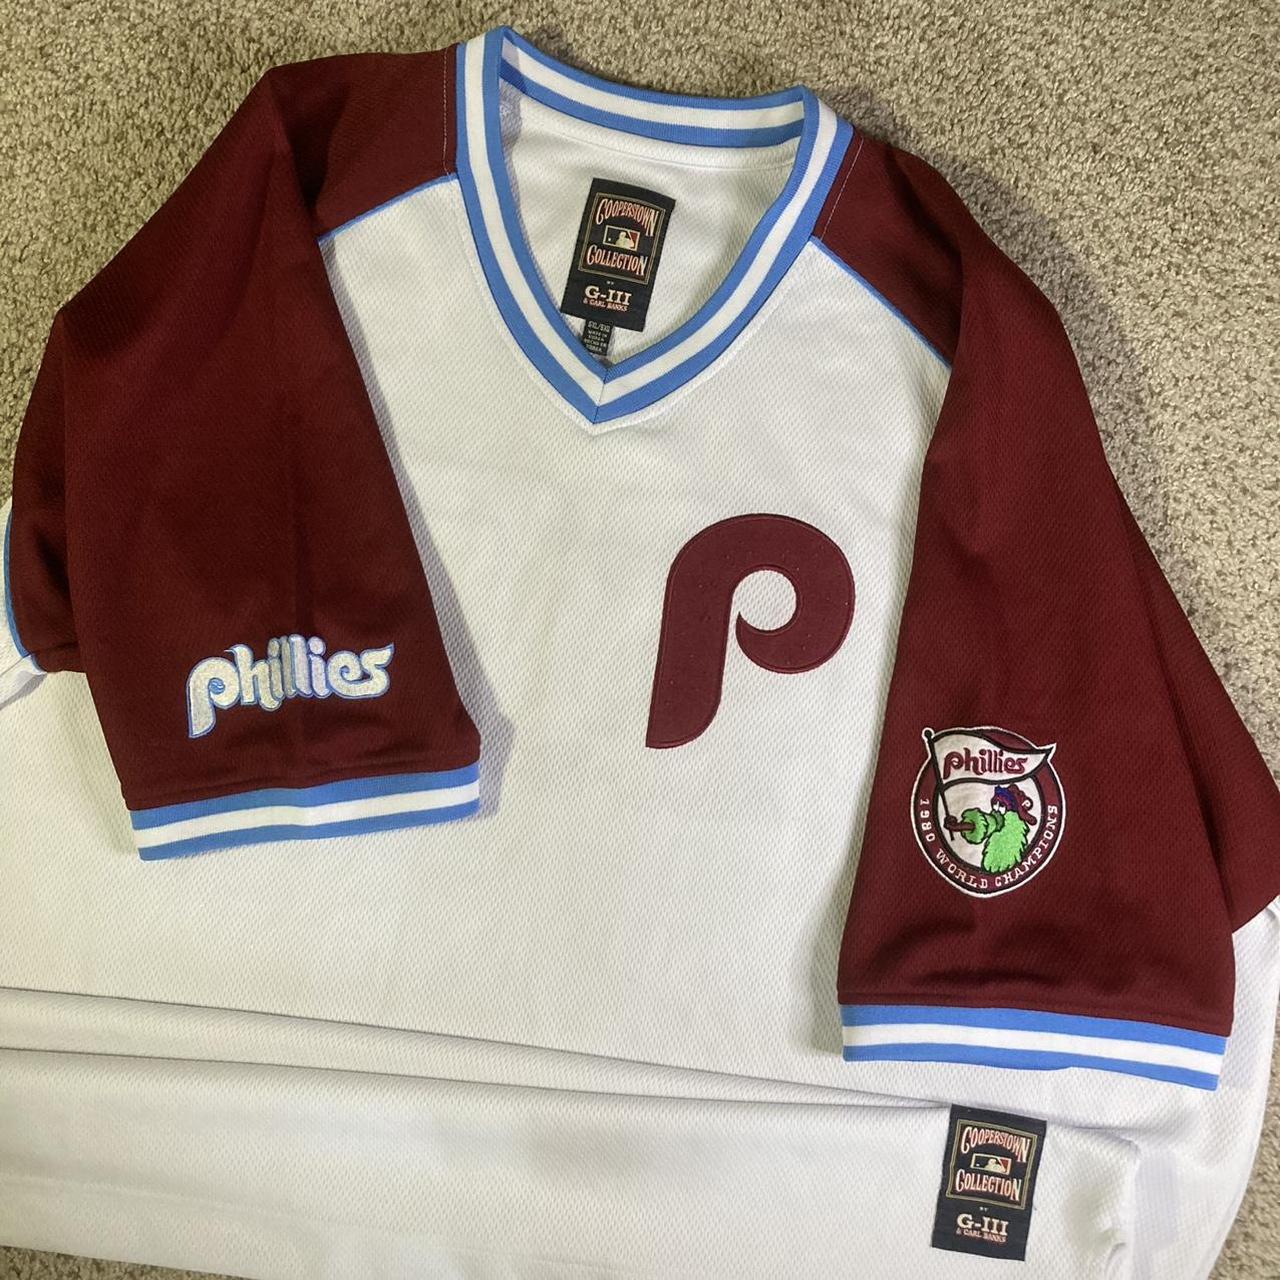 Philadelphia Phillies Cooperstown Collection jersey. - Depop